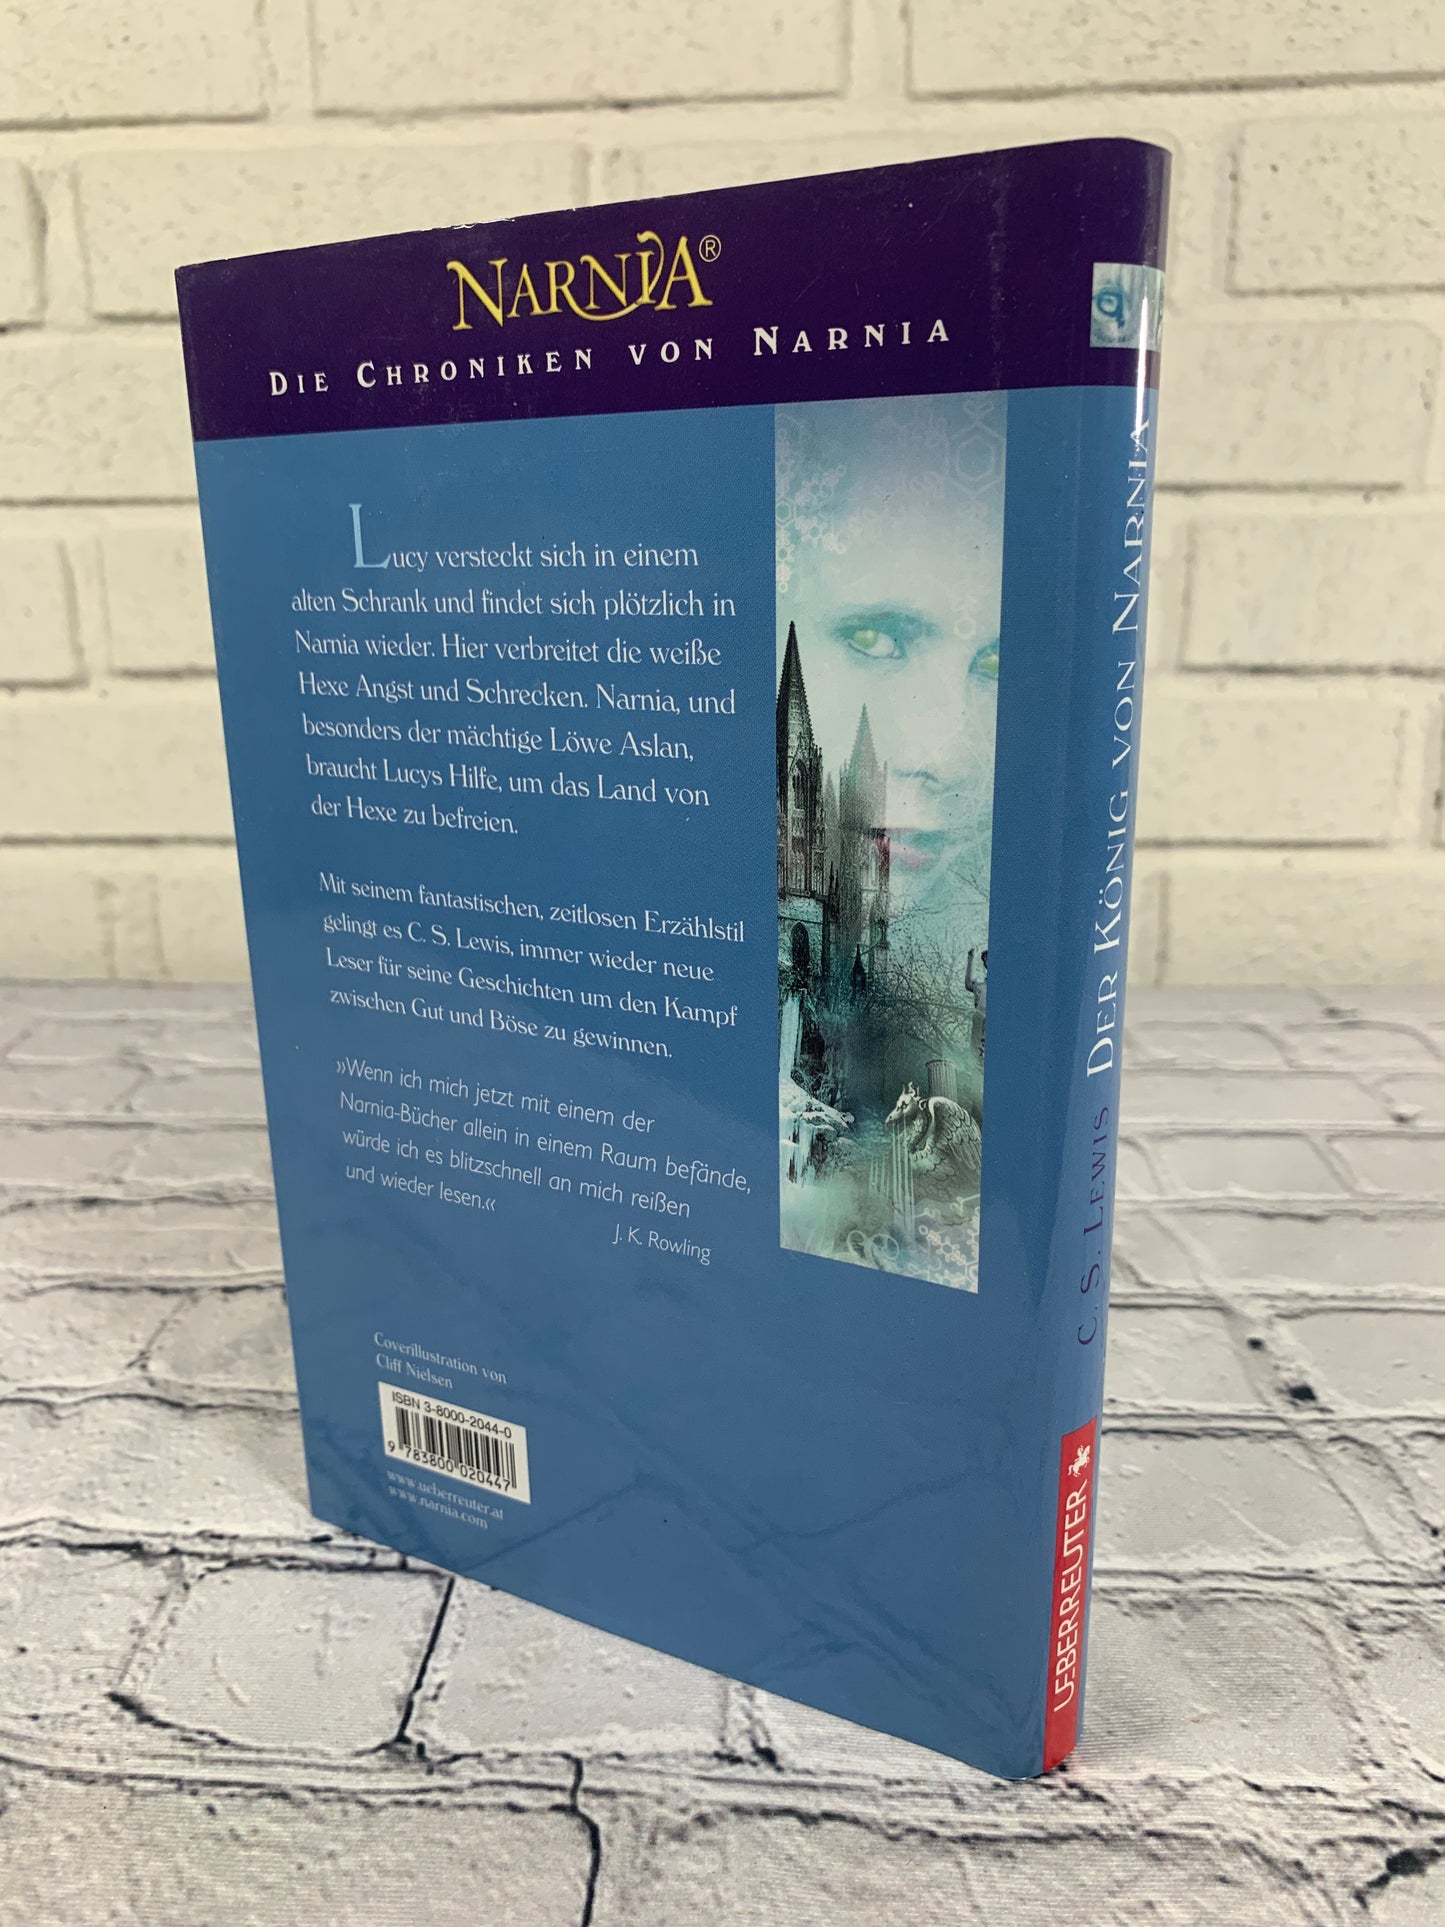 Der Konig Von Narnia # 2 by C.S. Lewis [2002]